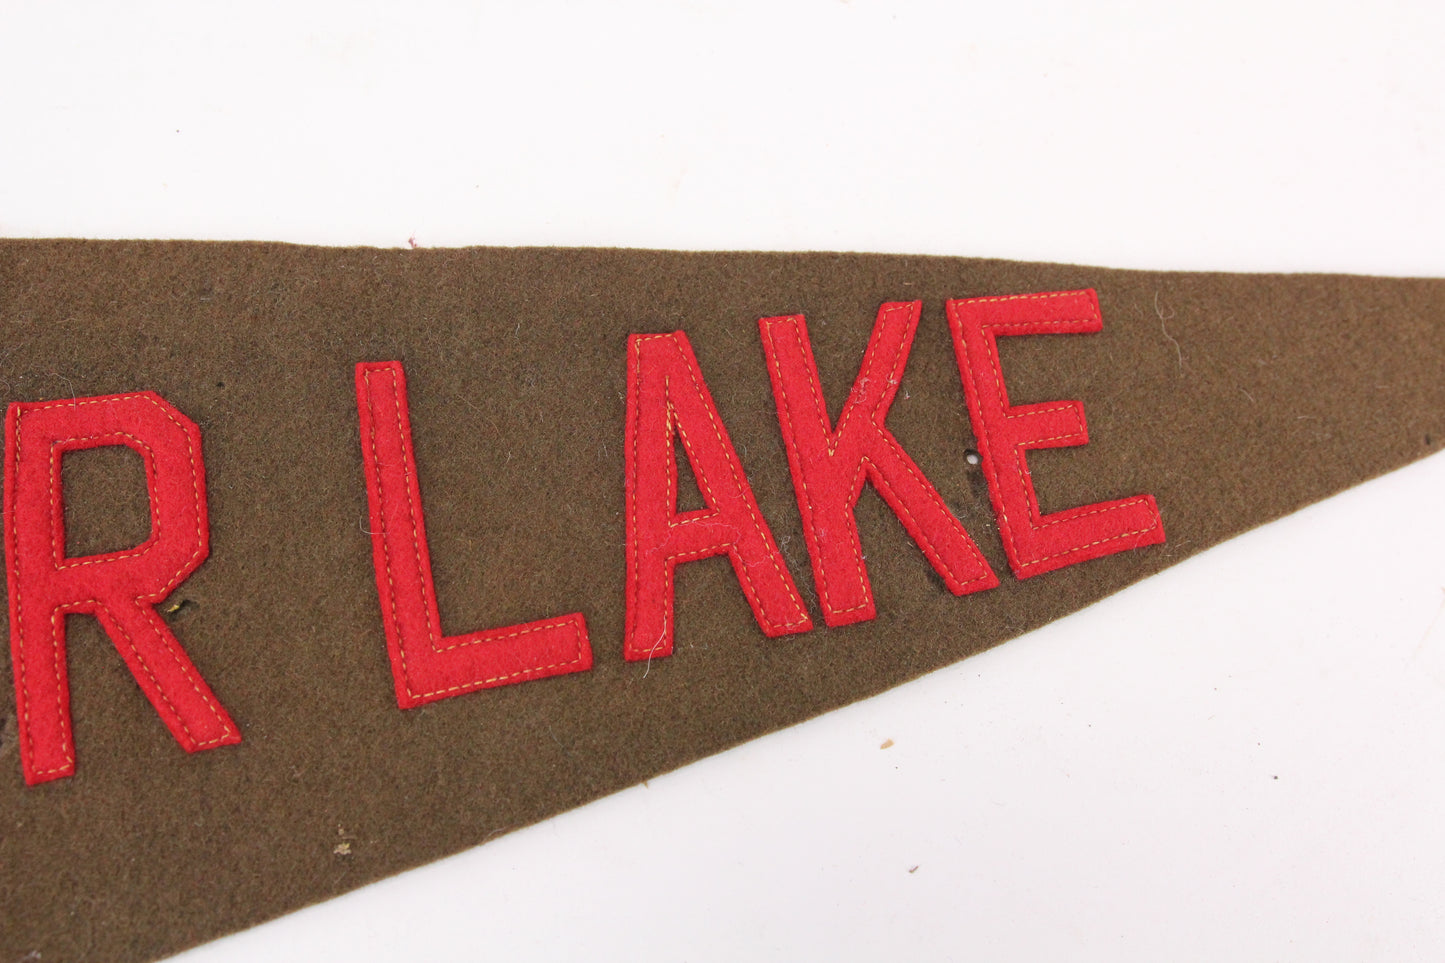 Camp Balfour Lake Stitched Letter Felt Souvenir Pennant - 27"